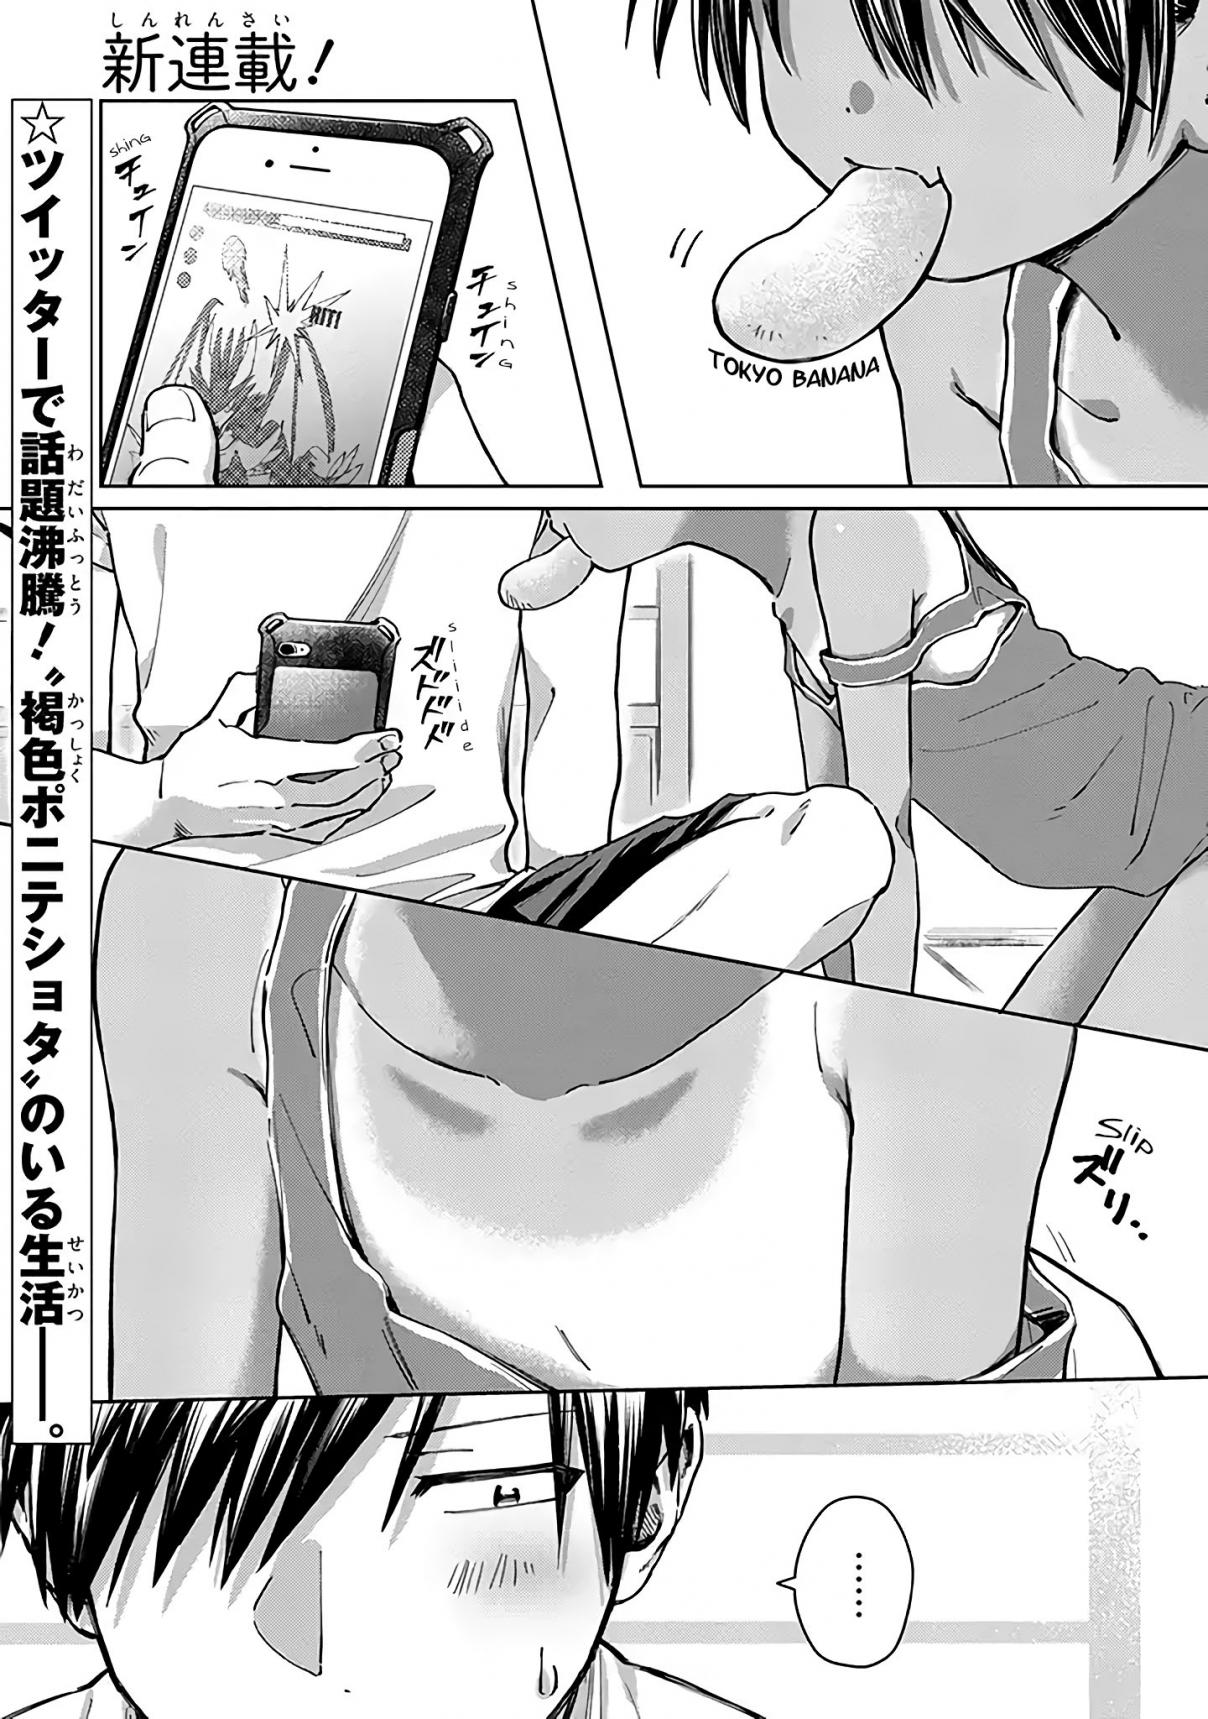 Inaka ni Kaeru to Yakeni Jiben ni Natsuita Kasshoku Ponytail Shota ga Iru Vol. 1 Ch. 1